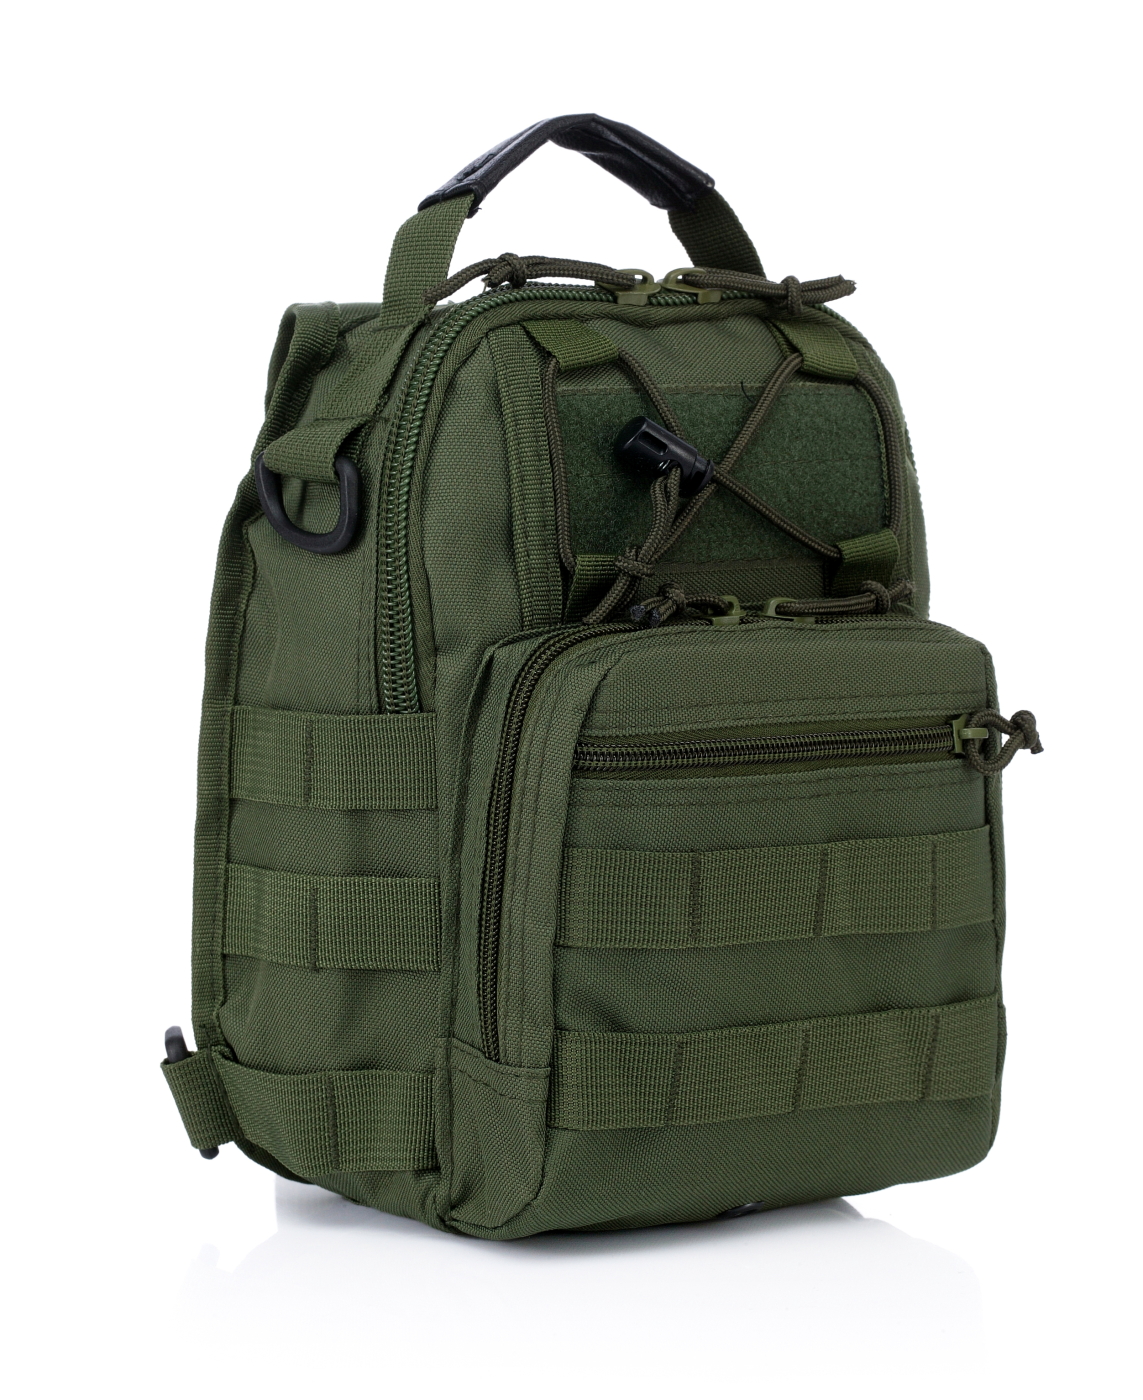 Купить наплечную тактическую однолямочную сумку-рюкзак (олива)